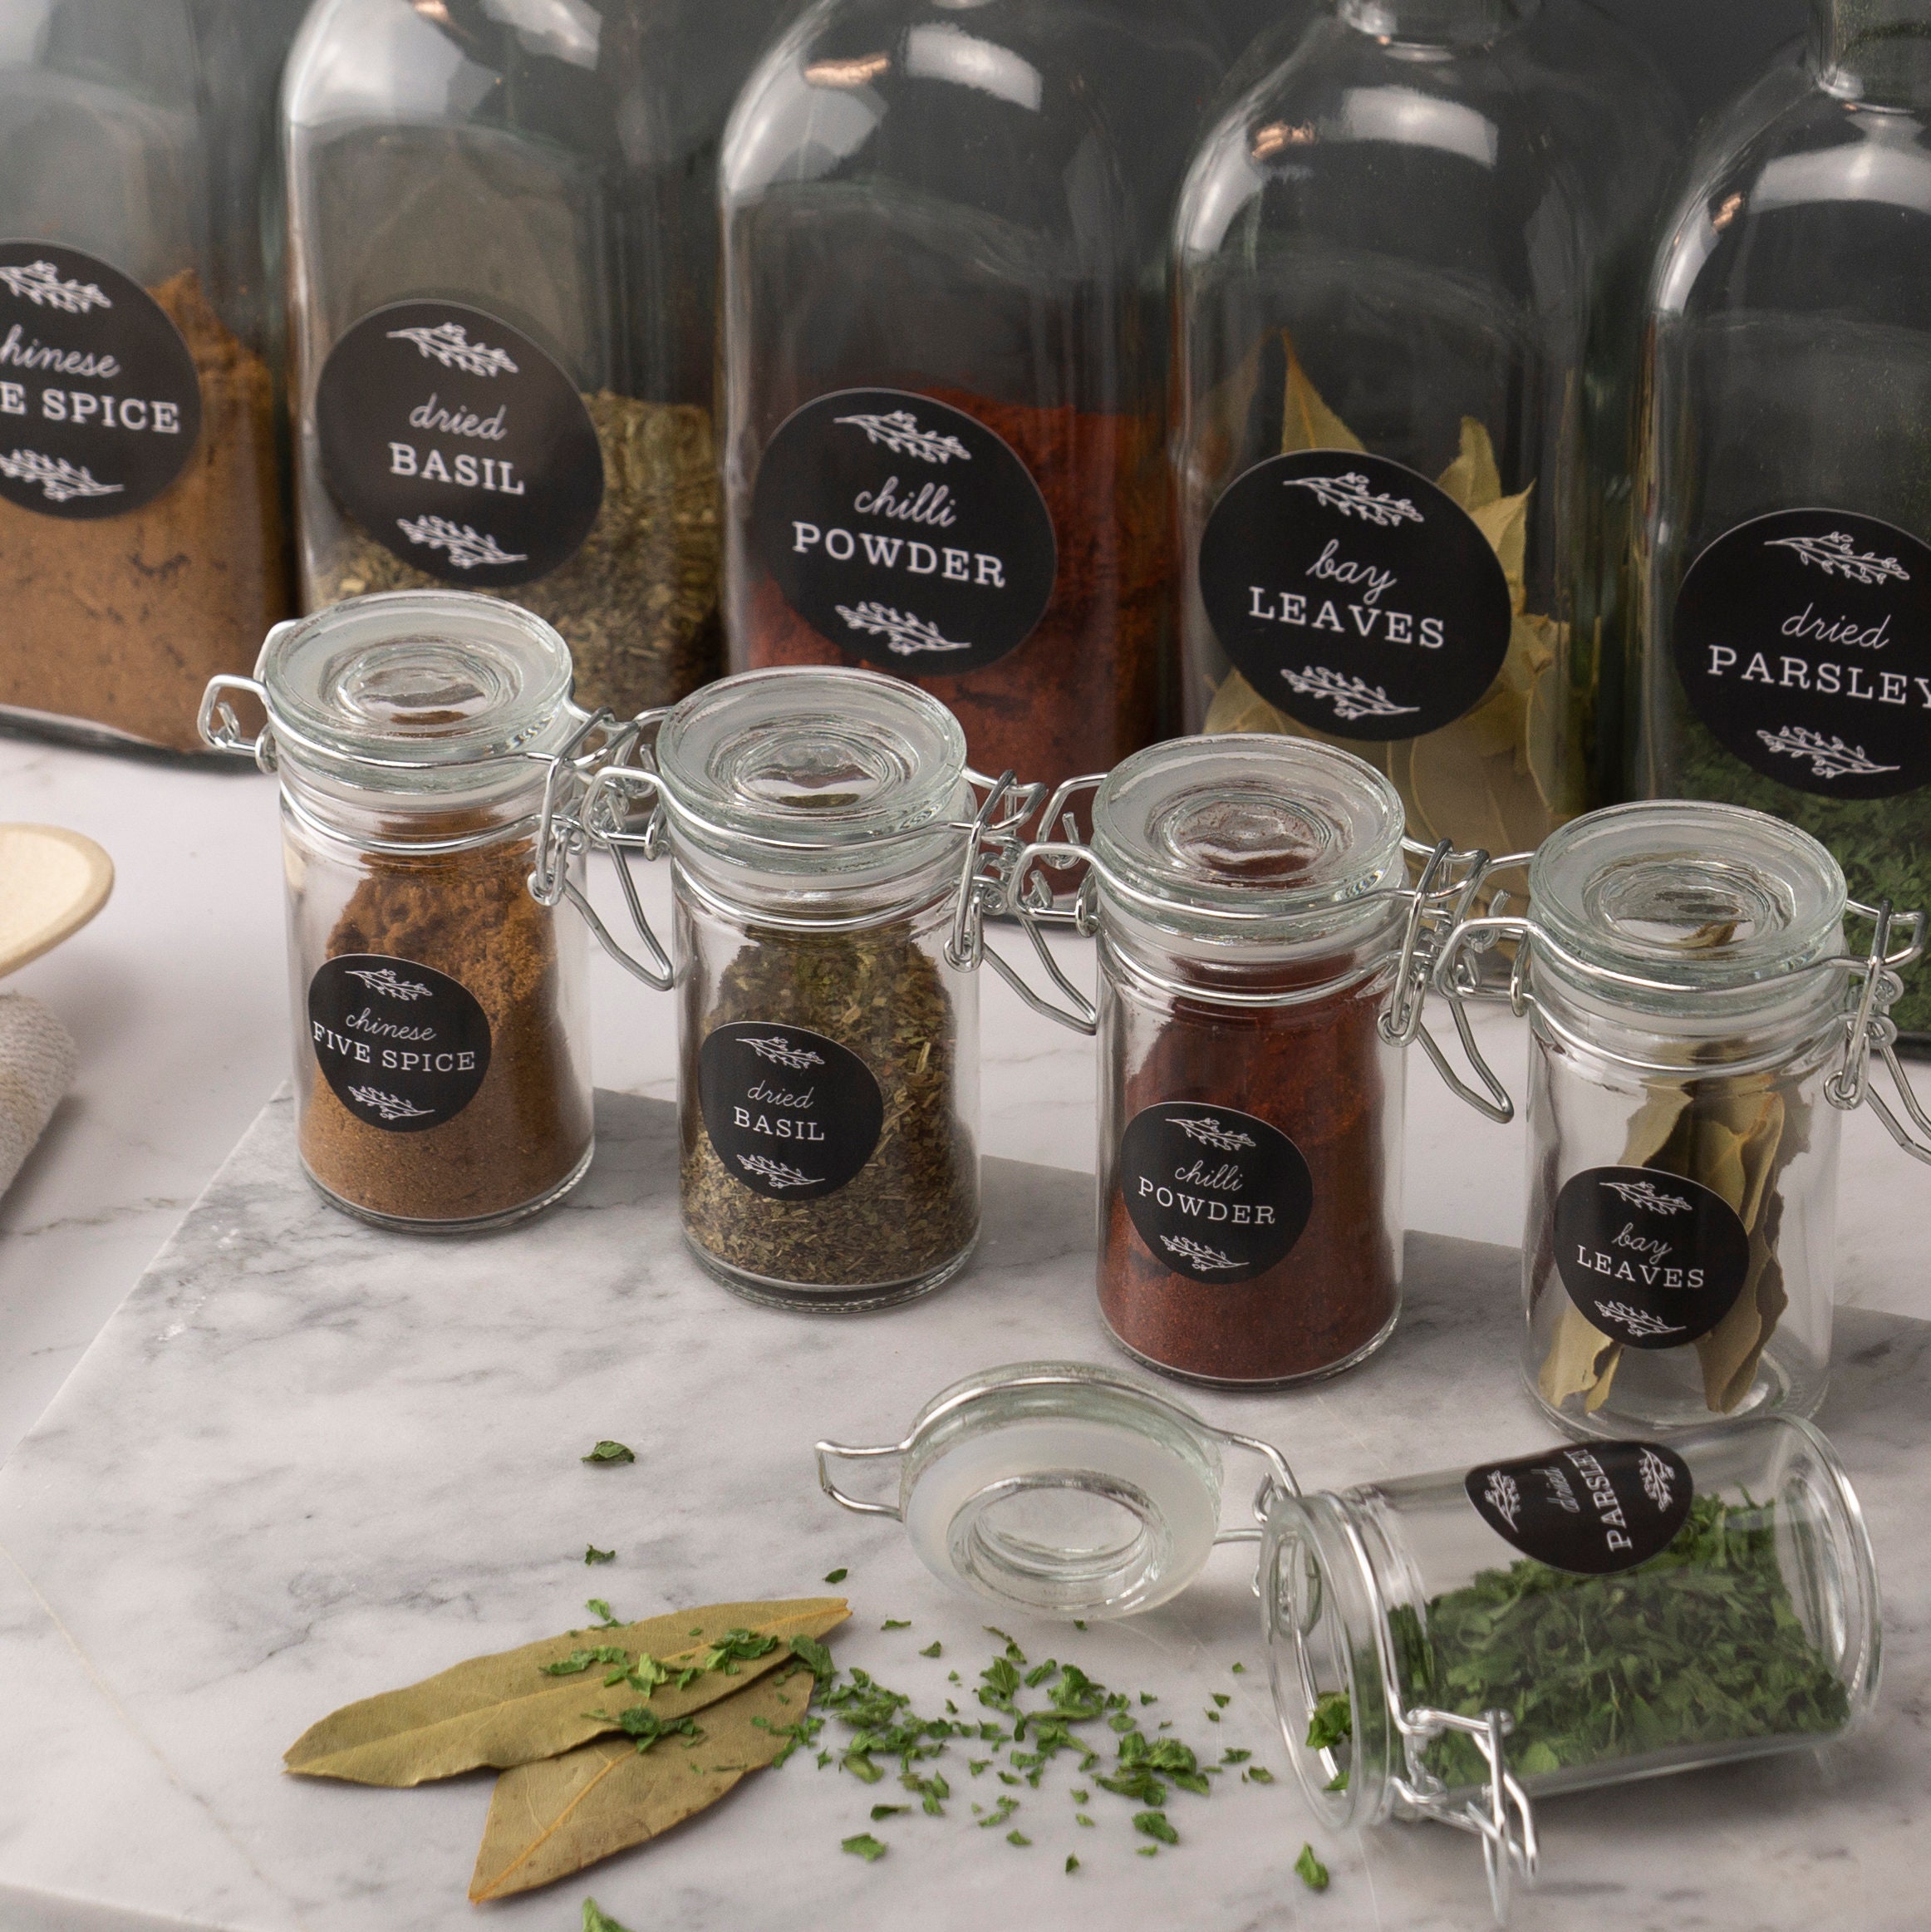 Étiquettes pour pots d'herbes et d'épices Etiquettes de rangement pour  garde-manger Aspect noir vintage -  France